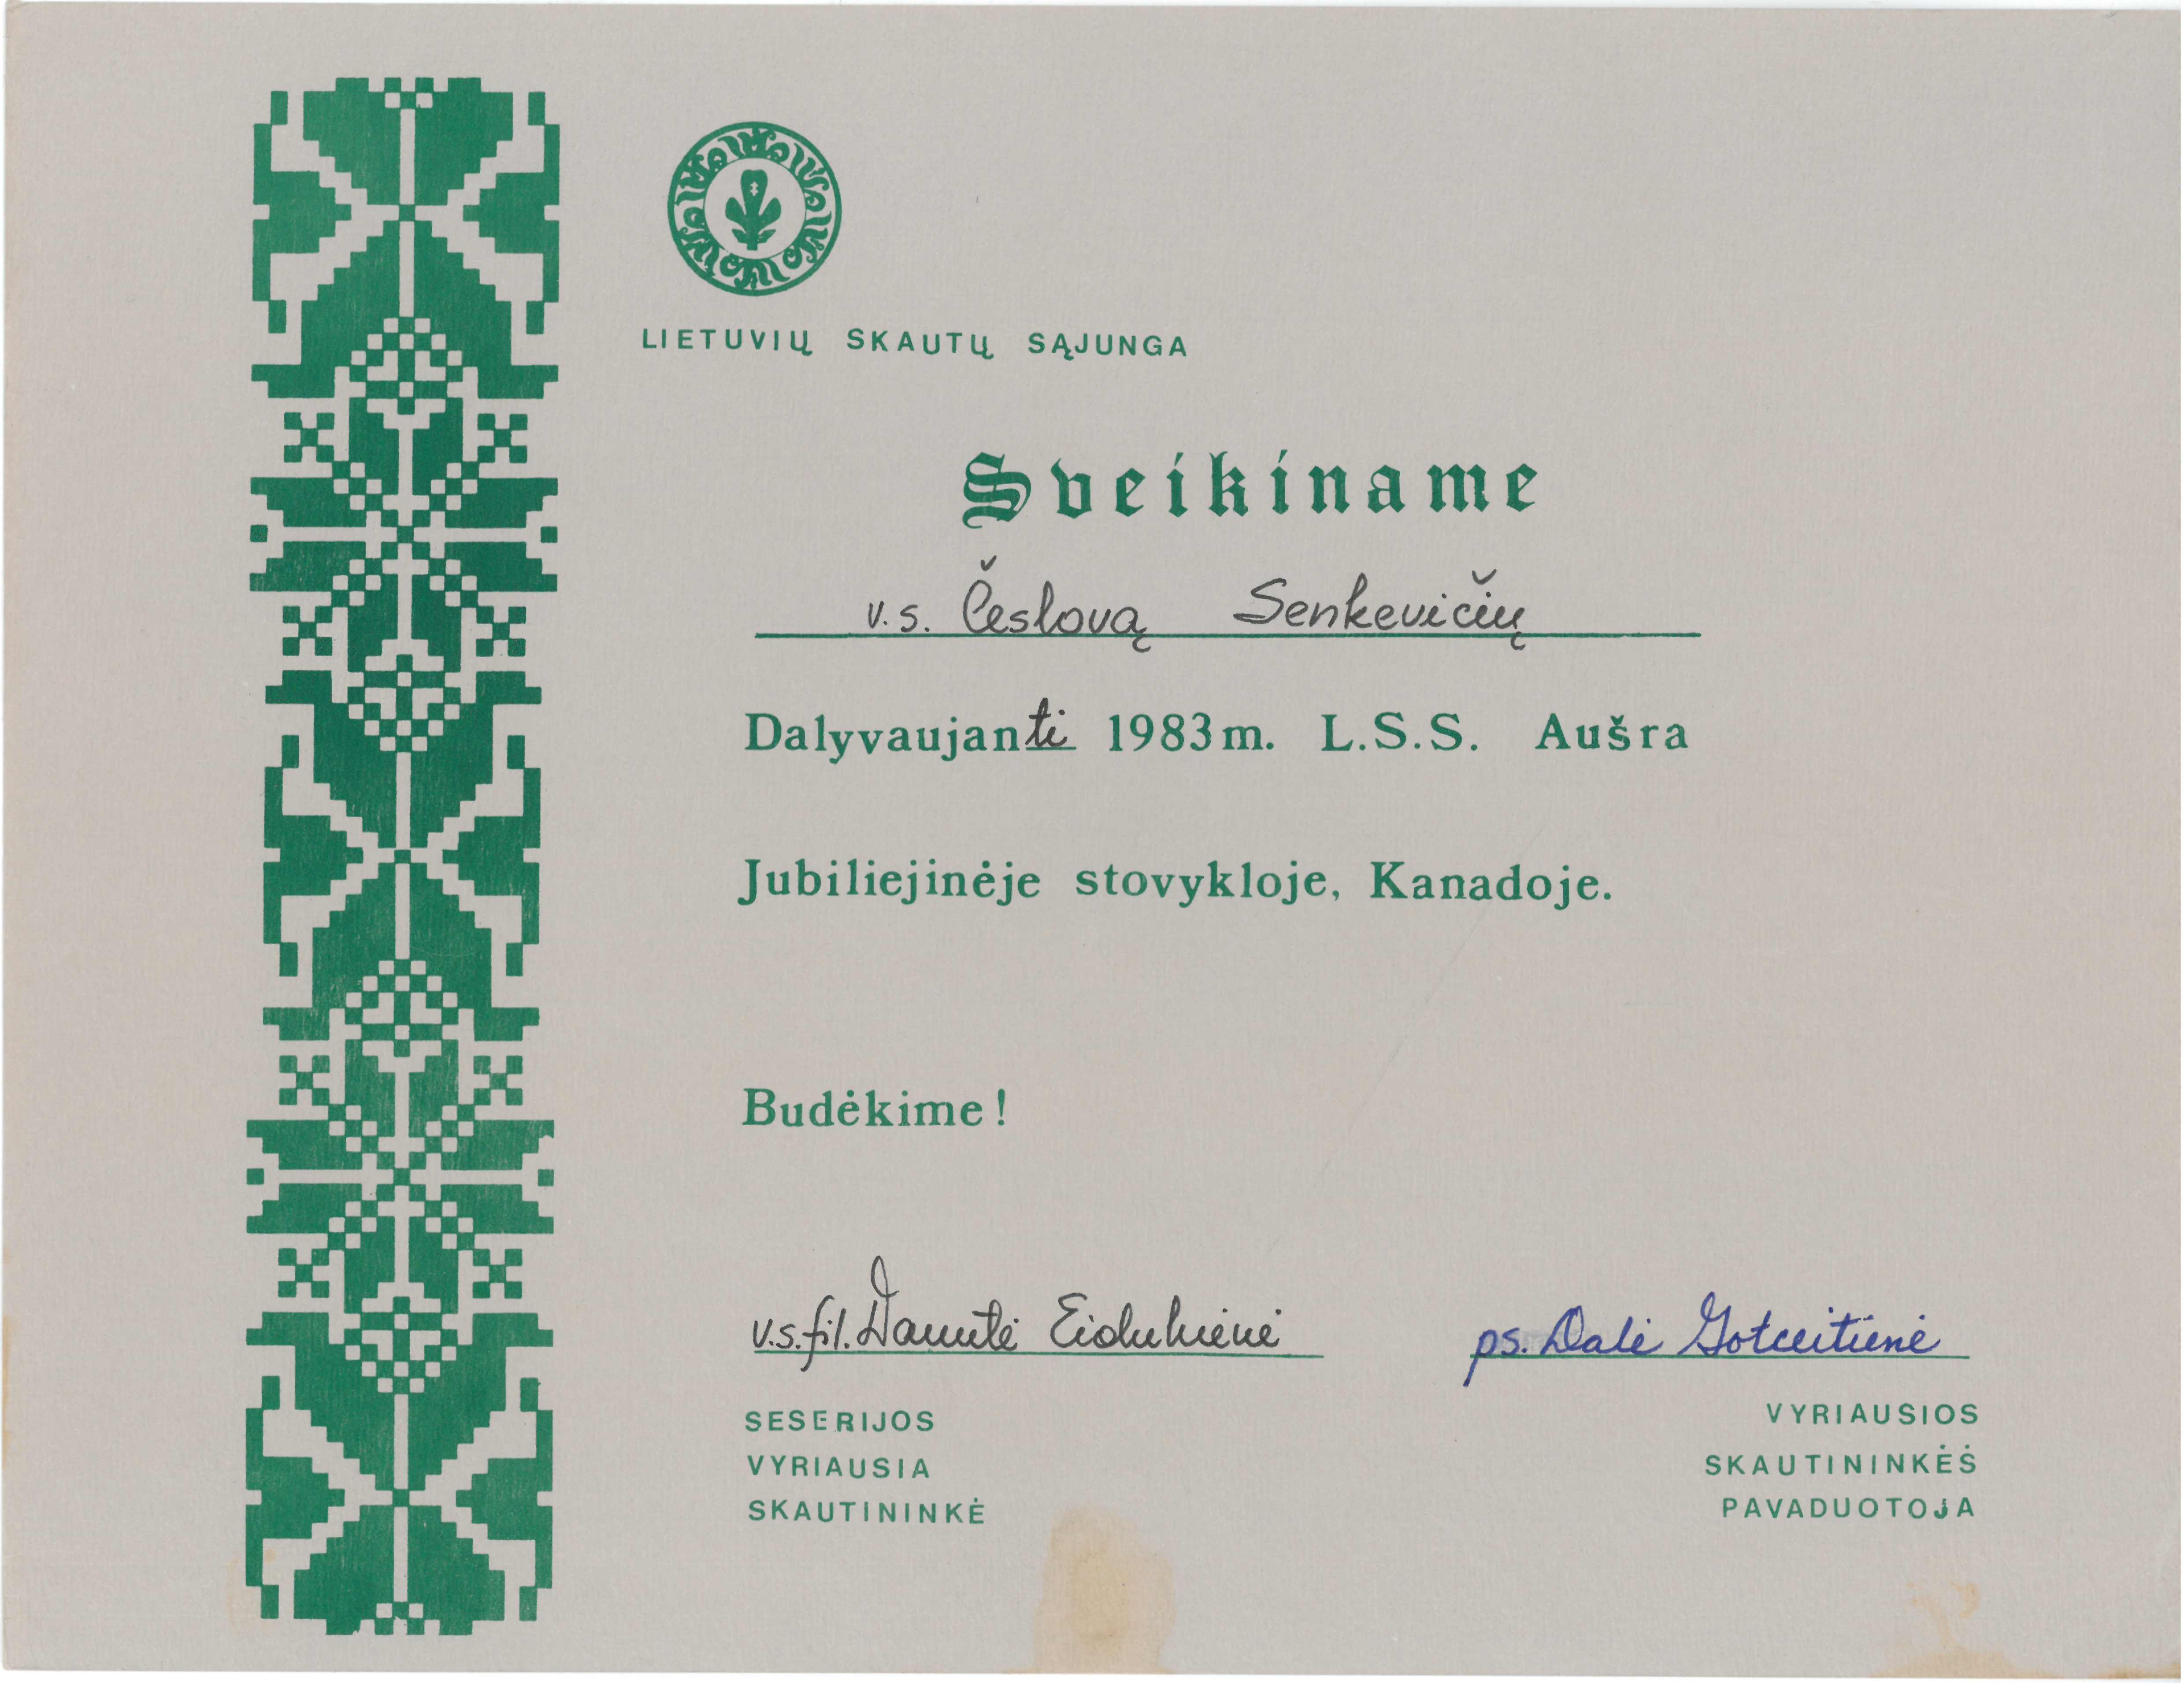 Lietuvių skautų sąjungos sveikinimas Česlovui Senkevičiui, dalyvaujančiam 1983 m. L. S. S. jubiliejinėje stovykloje „Aušra“, Kanadoje